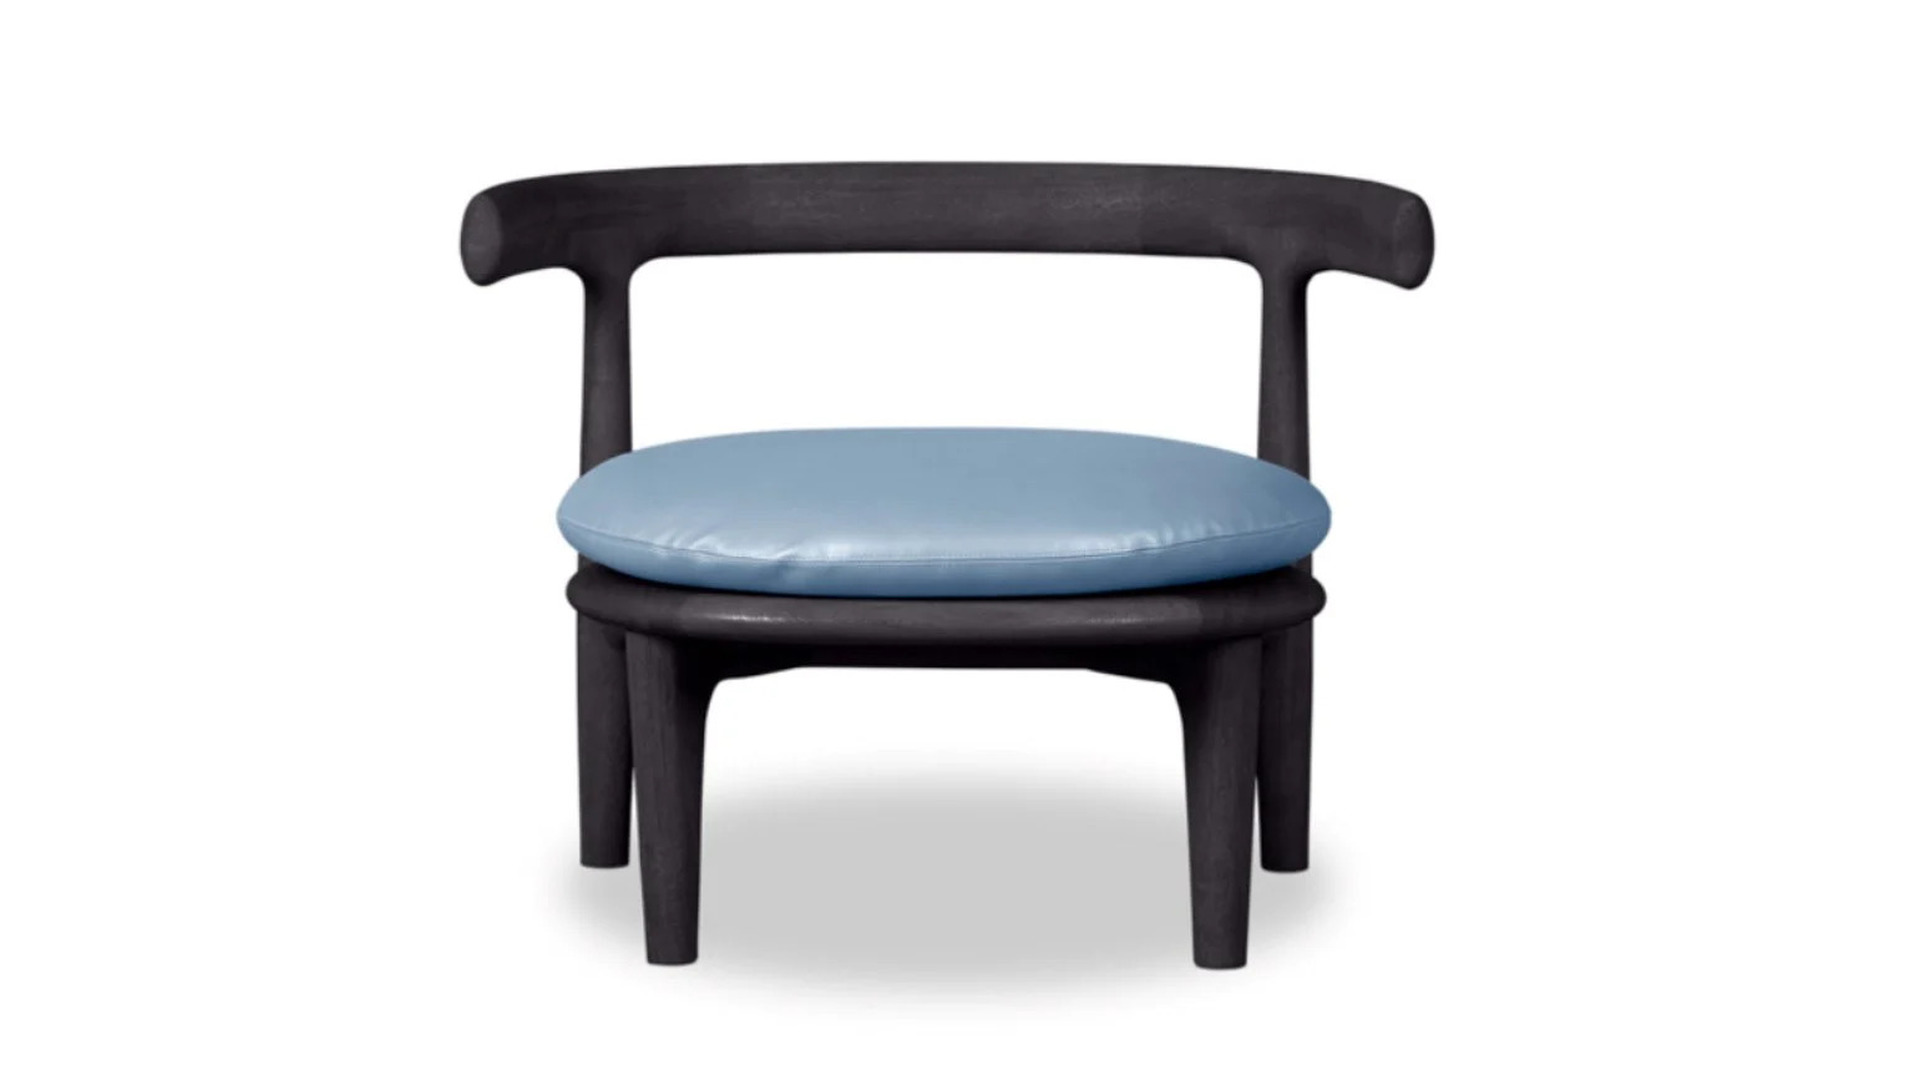 HORA Barneveld Baxter Himba fauteuil armstoel armchair stoel chair 2.jpg